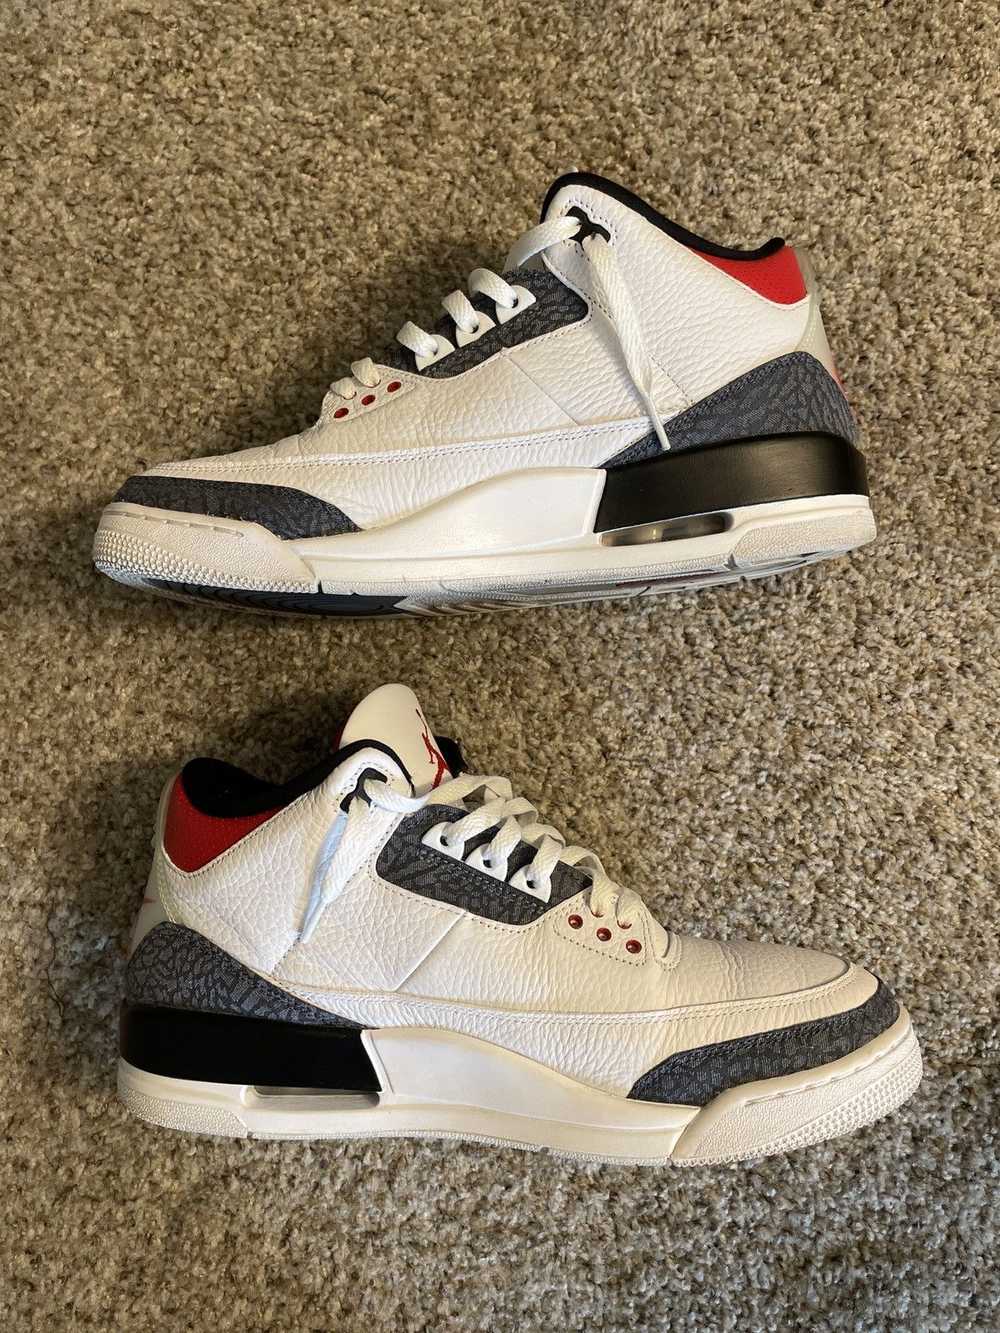 Jordan Brand × Nike Jordan 3 Retro “Denim” - image 4